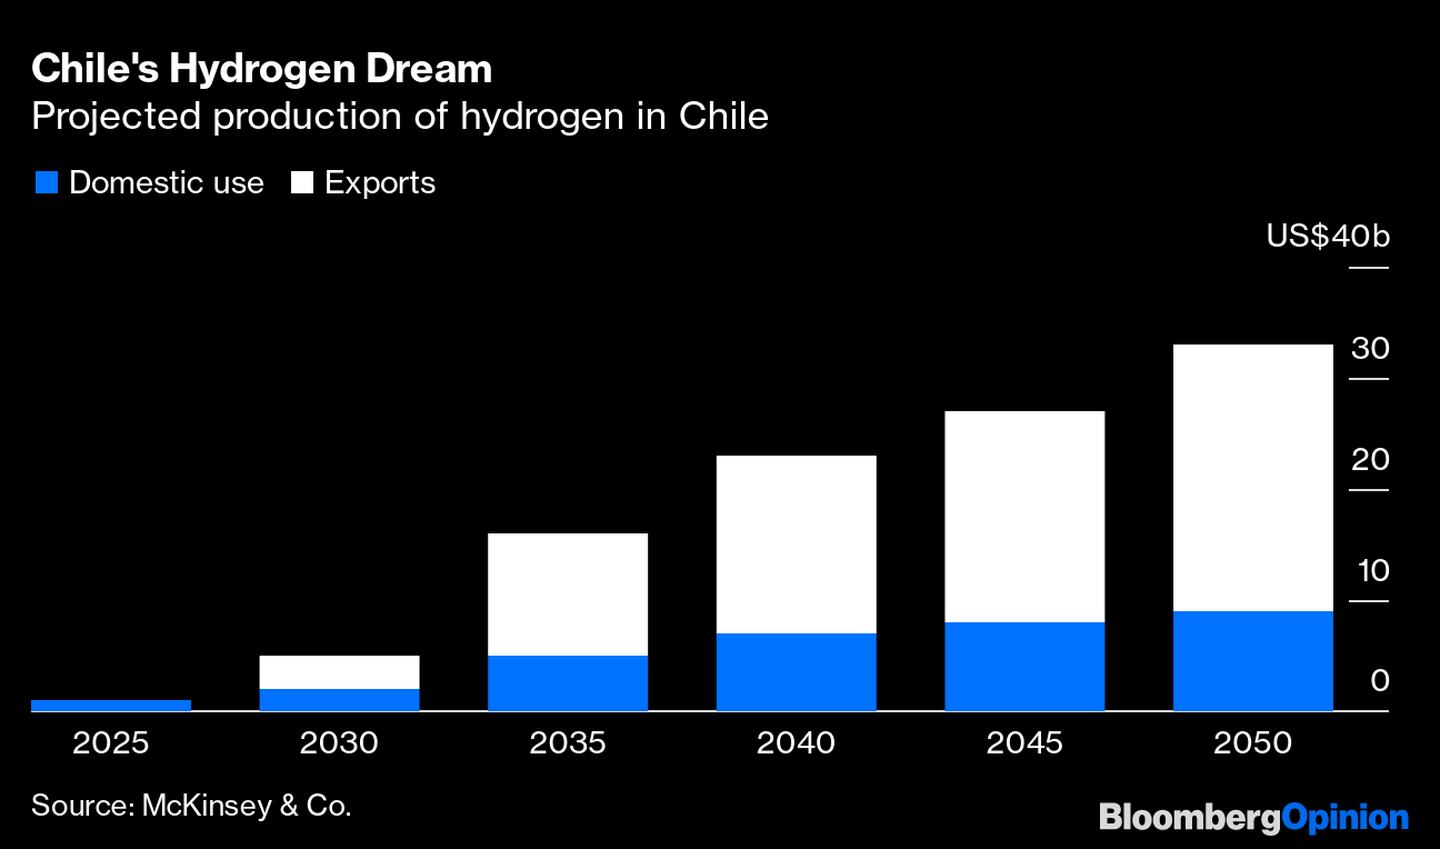 Producción proyectada de hidrógeno en Chile. dfd